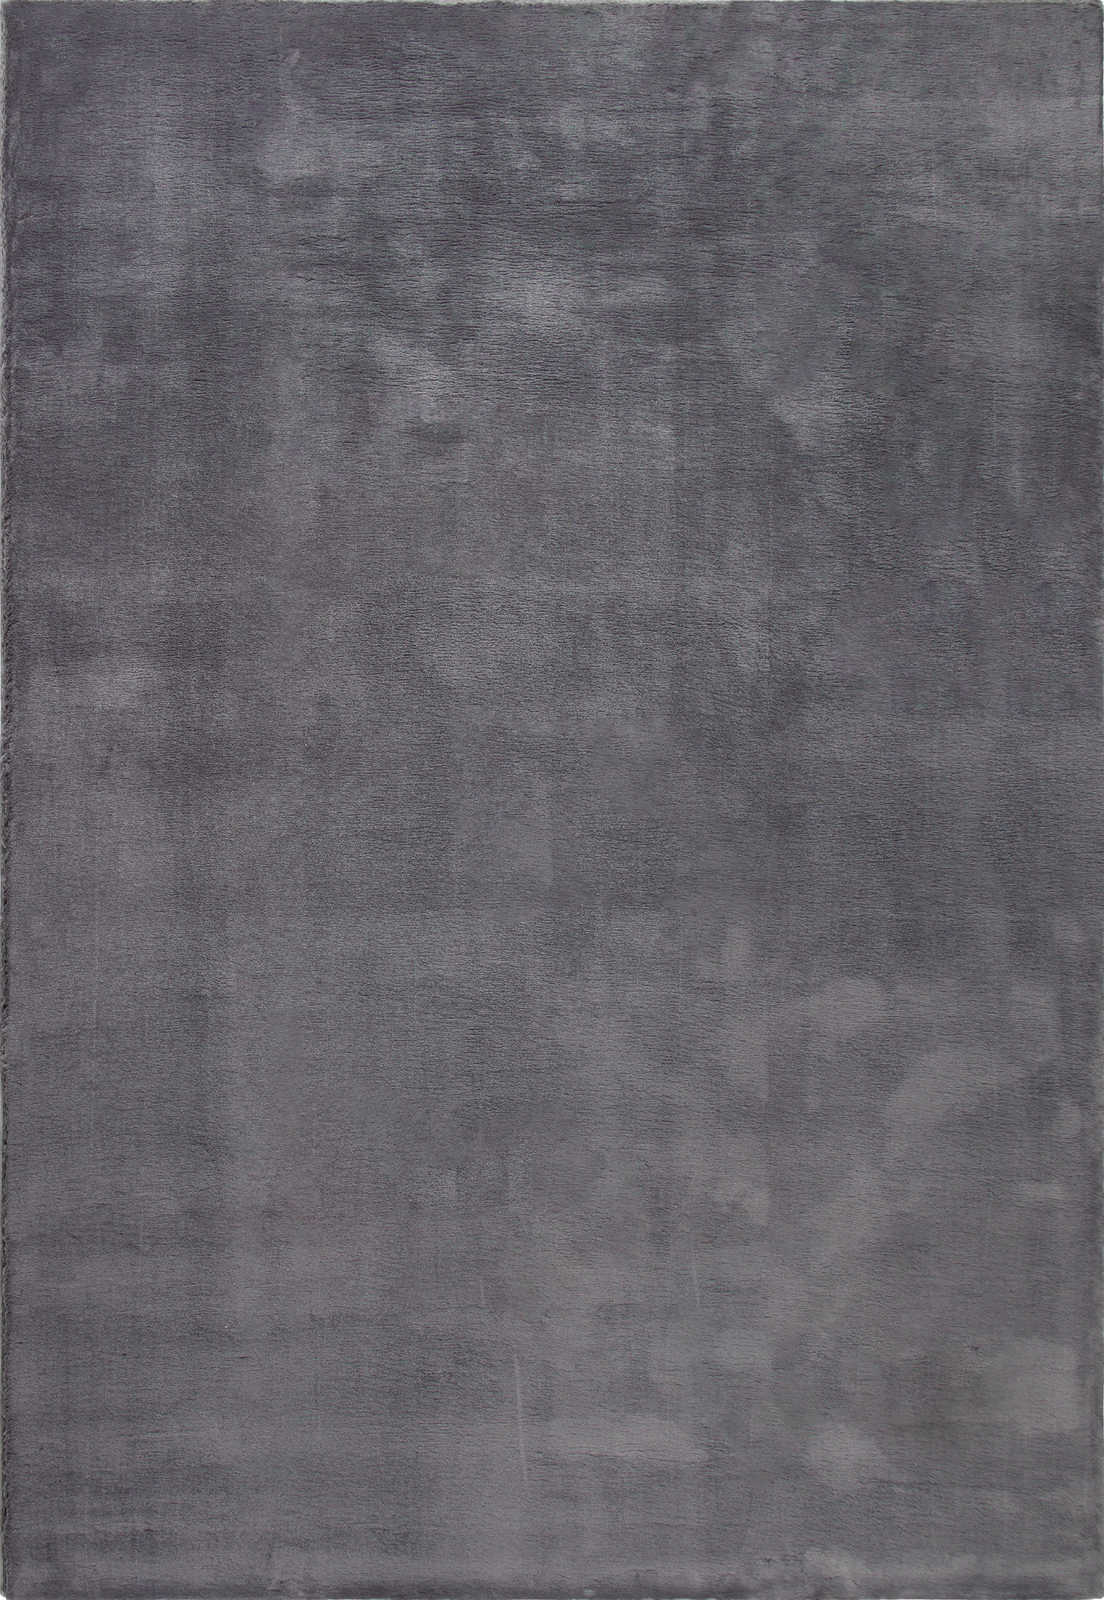             Moderner Hochflor Teppich in Anthrazit – 230 x 160 cm
        